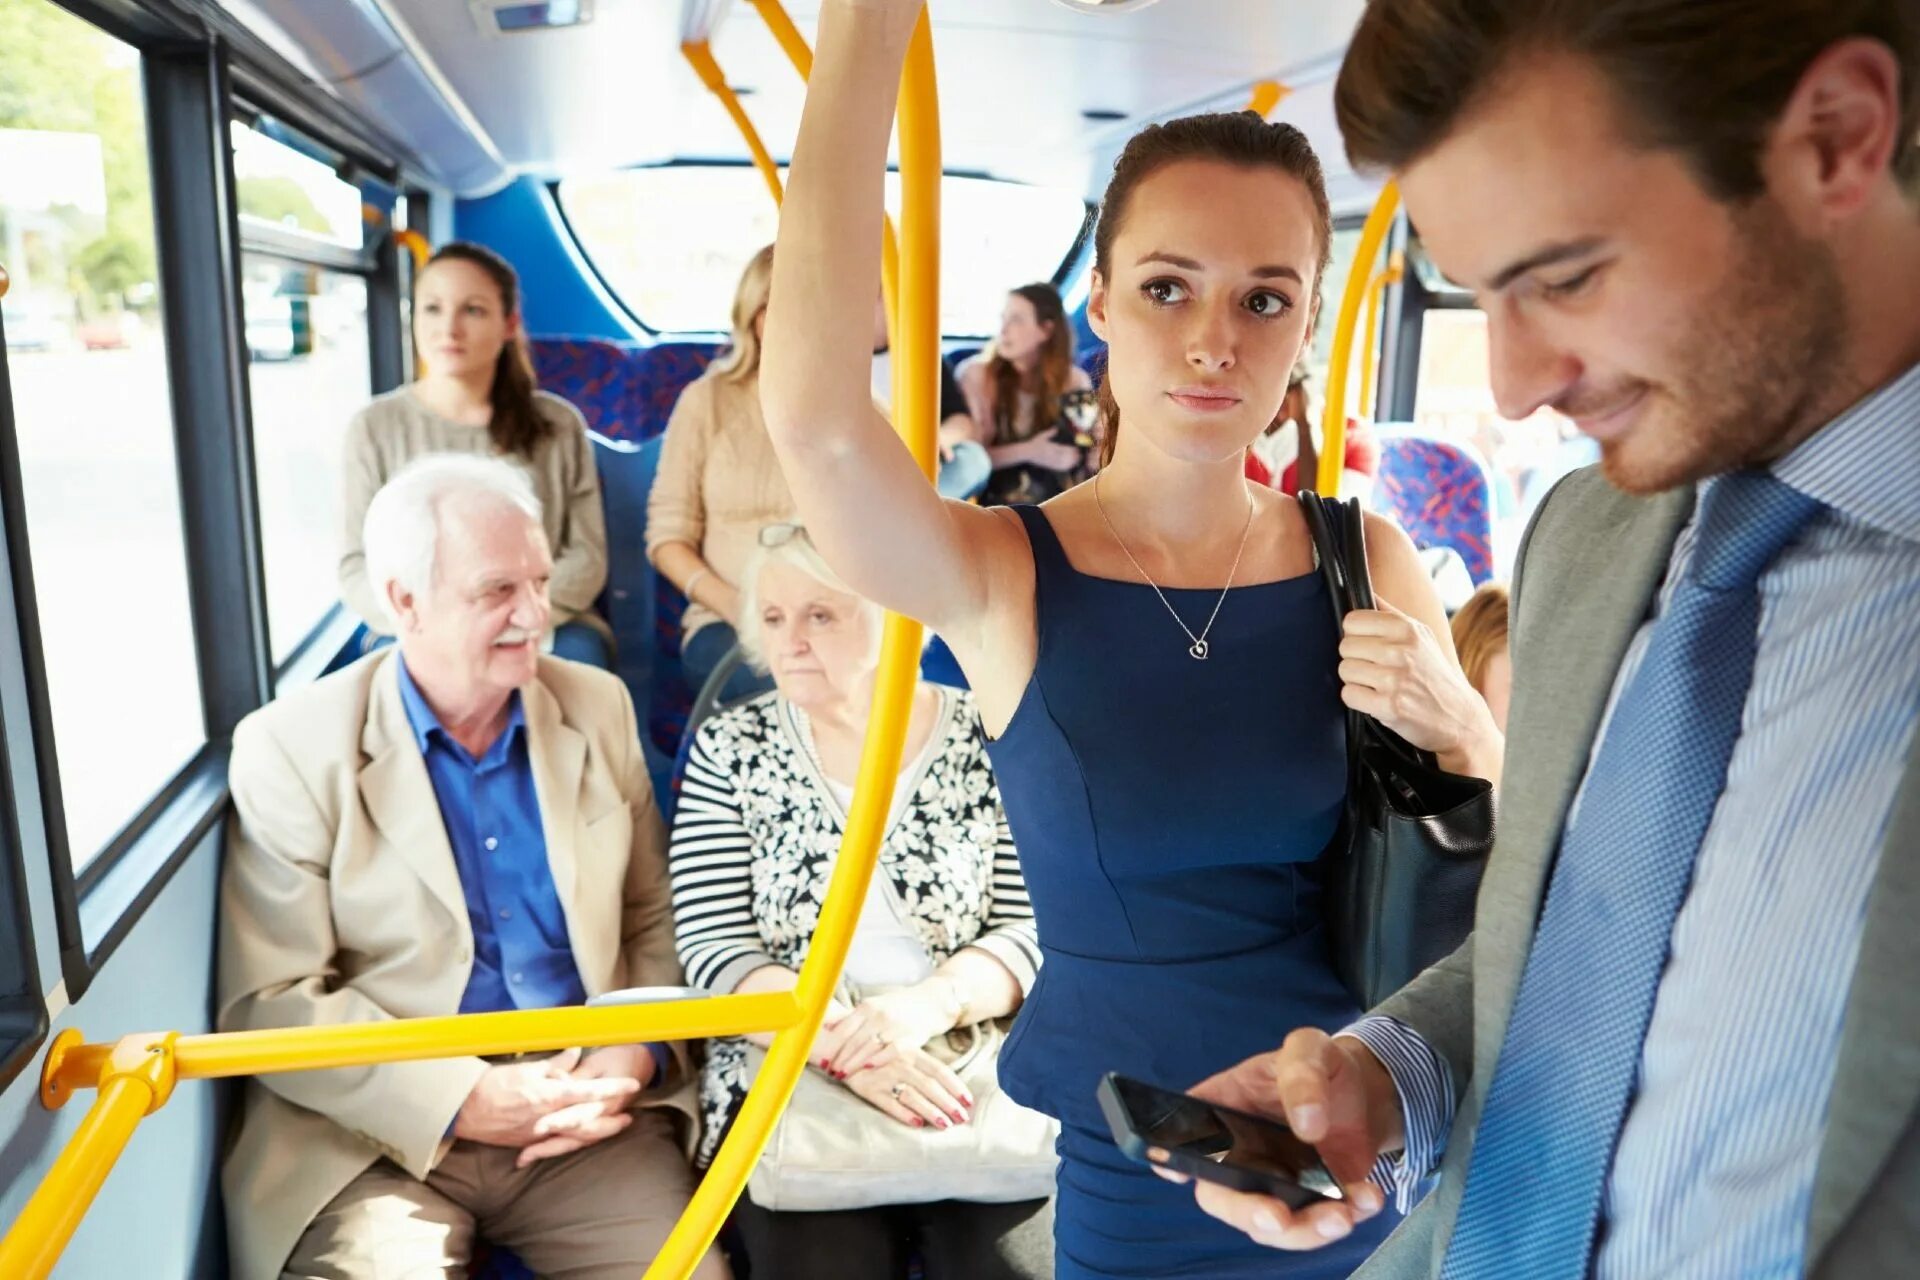 Случай в общественном транспорте. Люди в транспорте. Люди в автобусе. D общественнv транспорт. Пассажиры общественного транспорта.